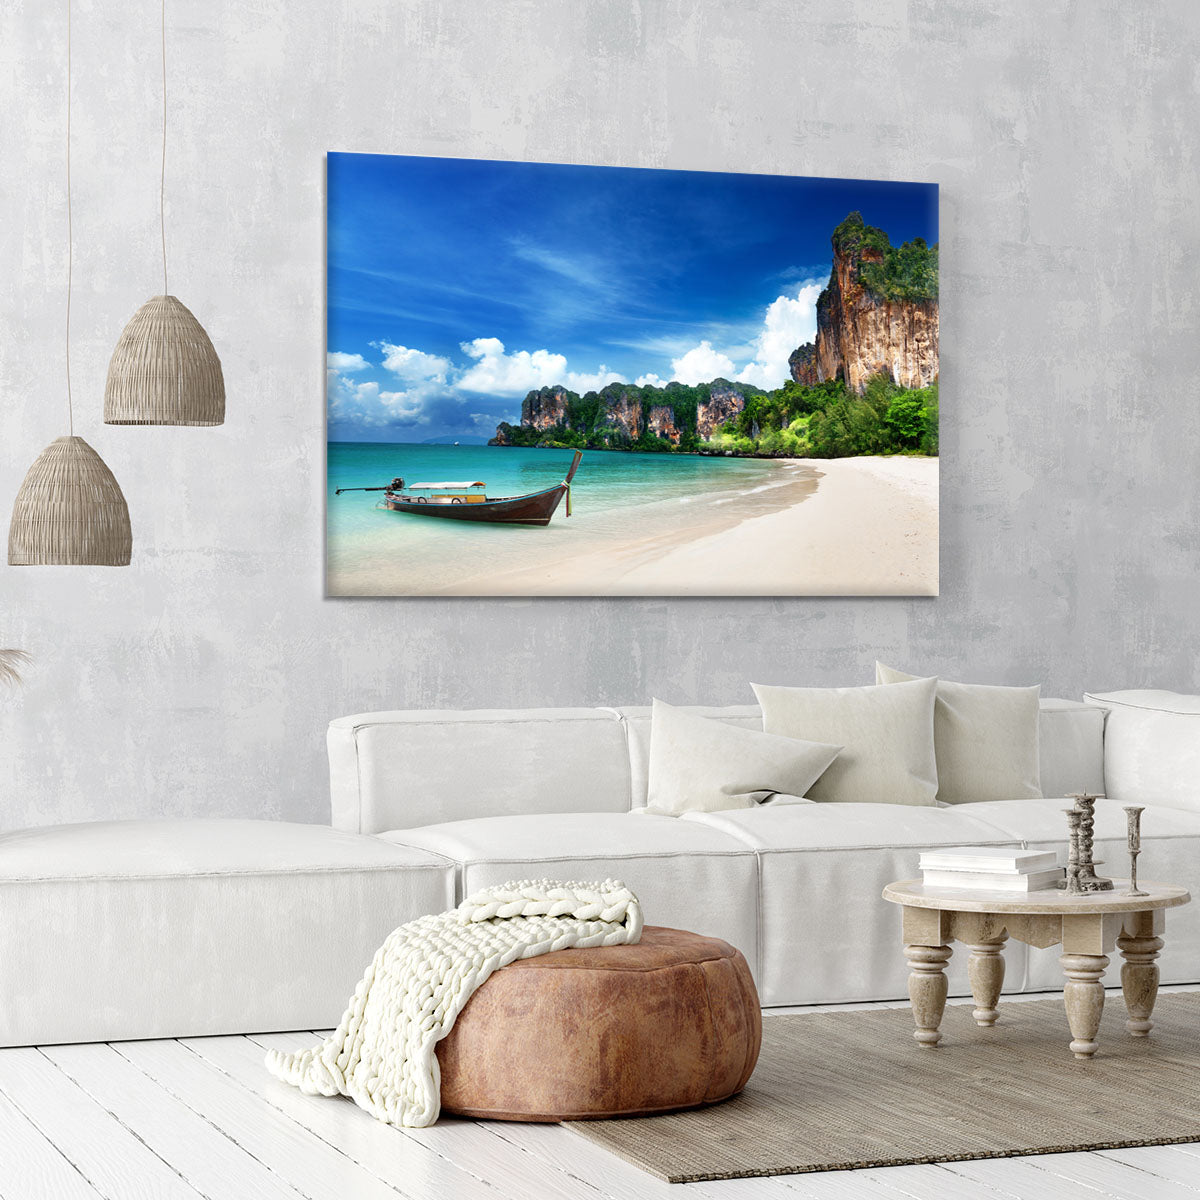 Railay beach in Krabi Thailand Canvas Print or Poster - Canvas Art Rocks - 6